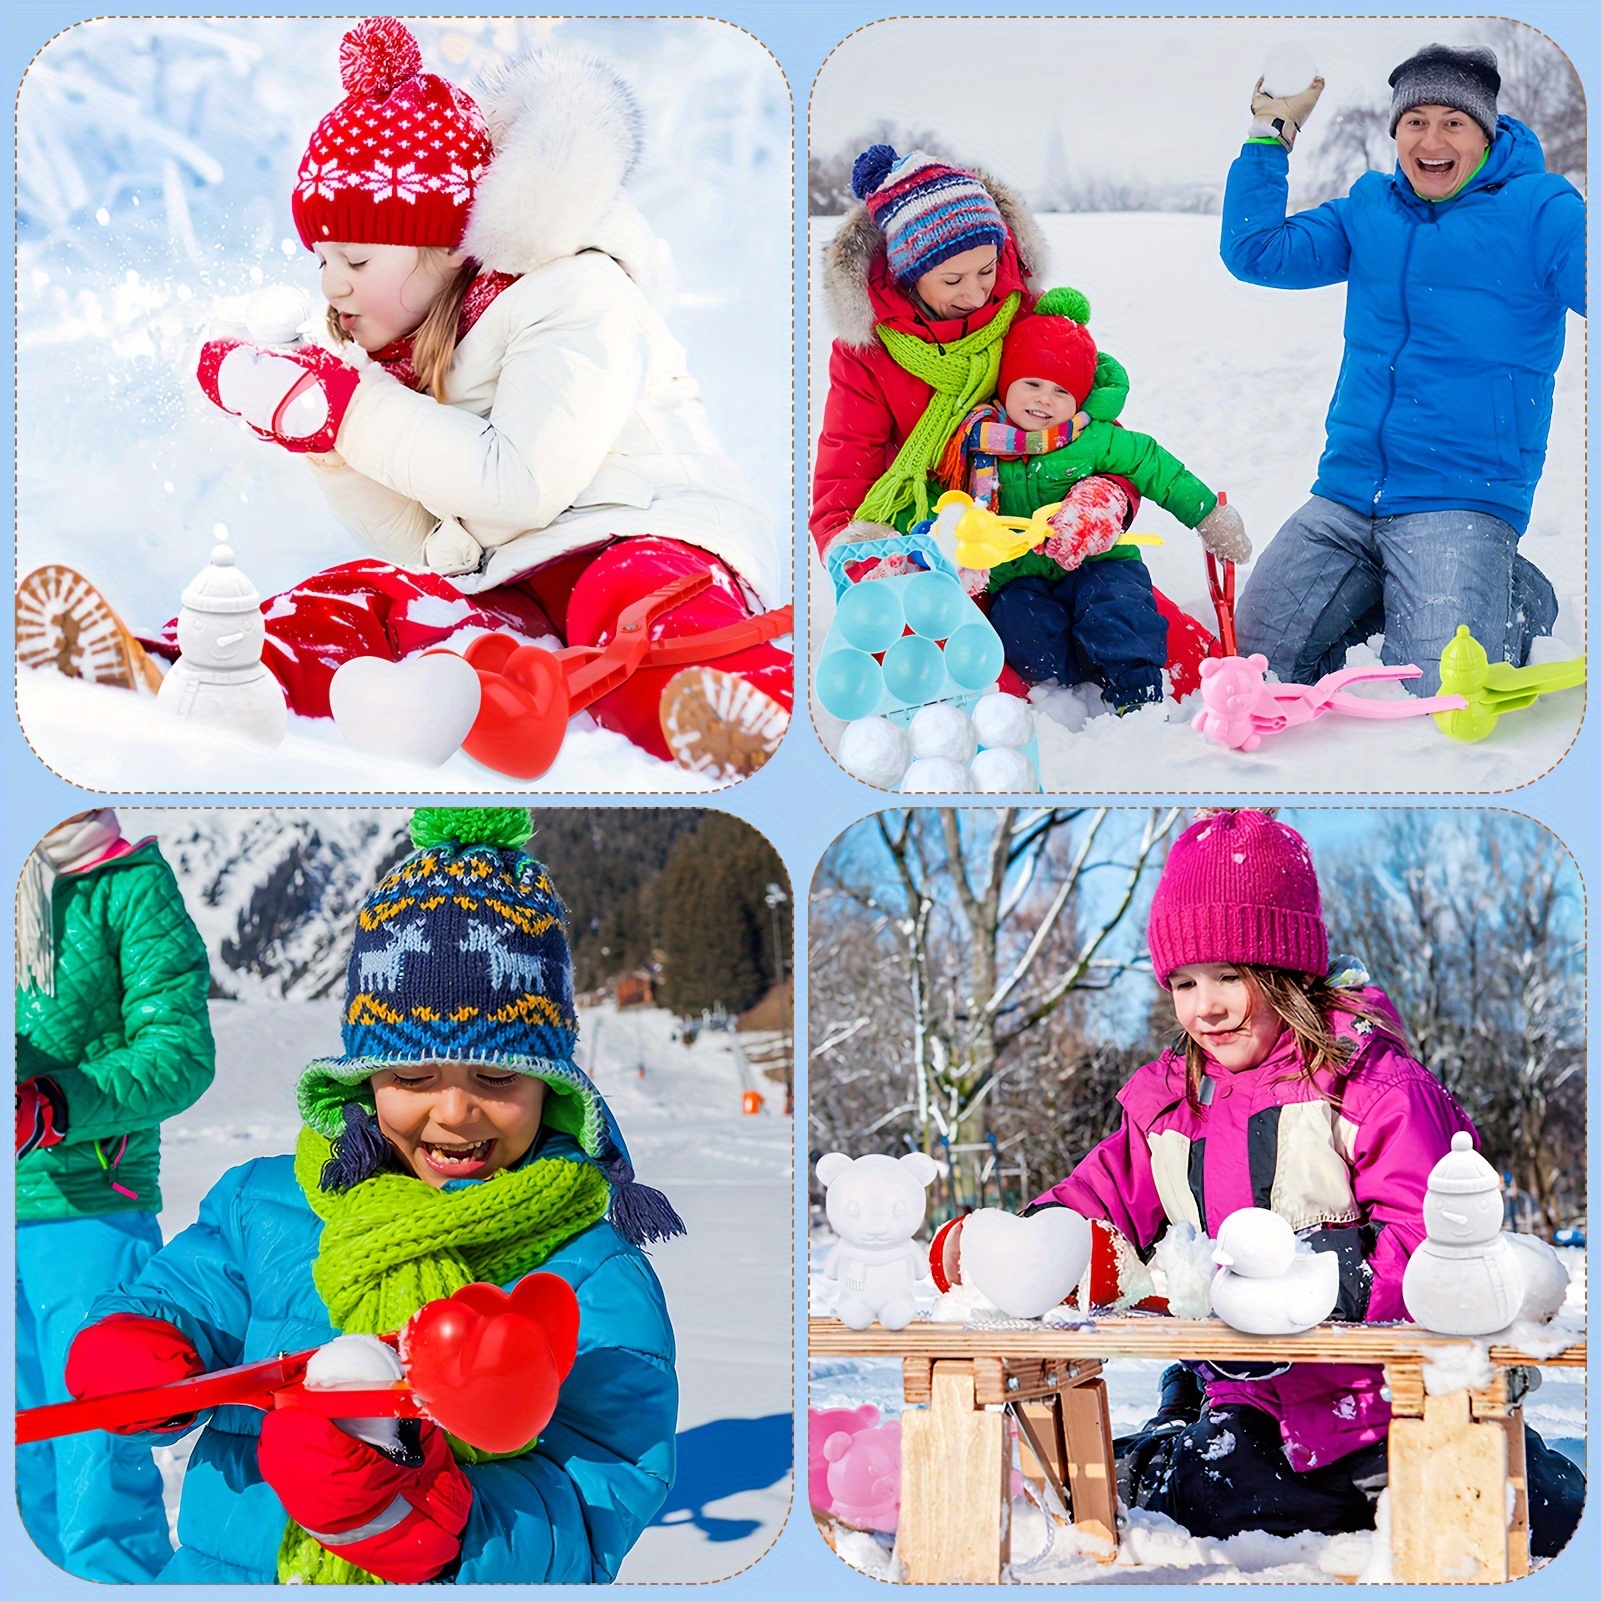 Outdoor Snow Toys Kids, Duck Shape Snow Ball Maker